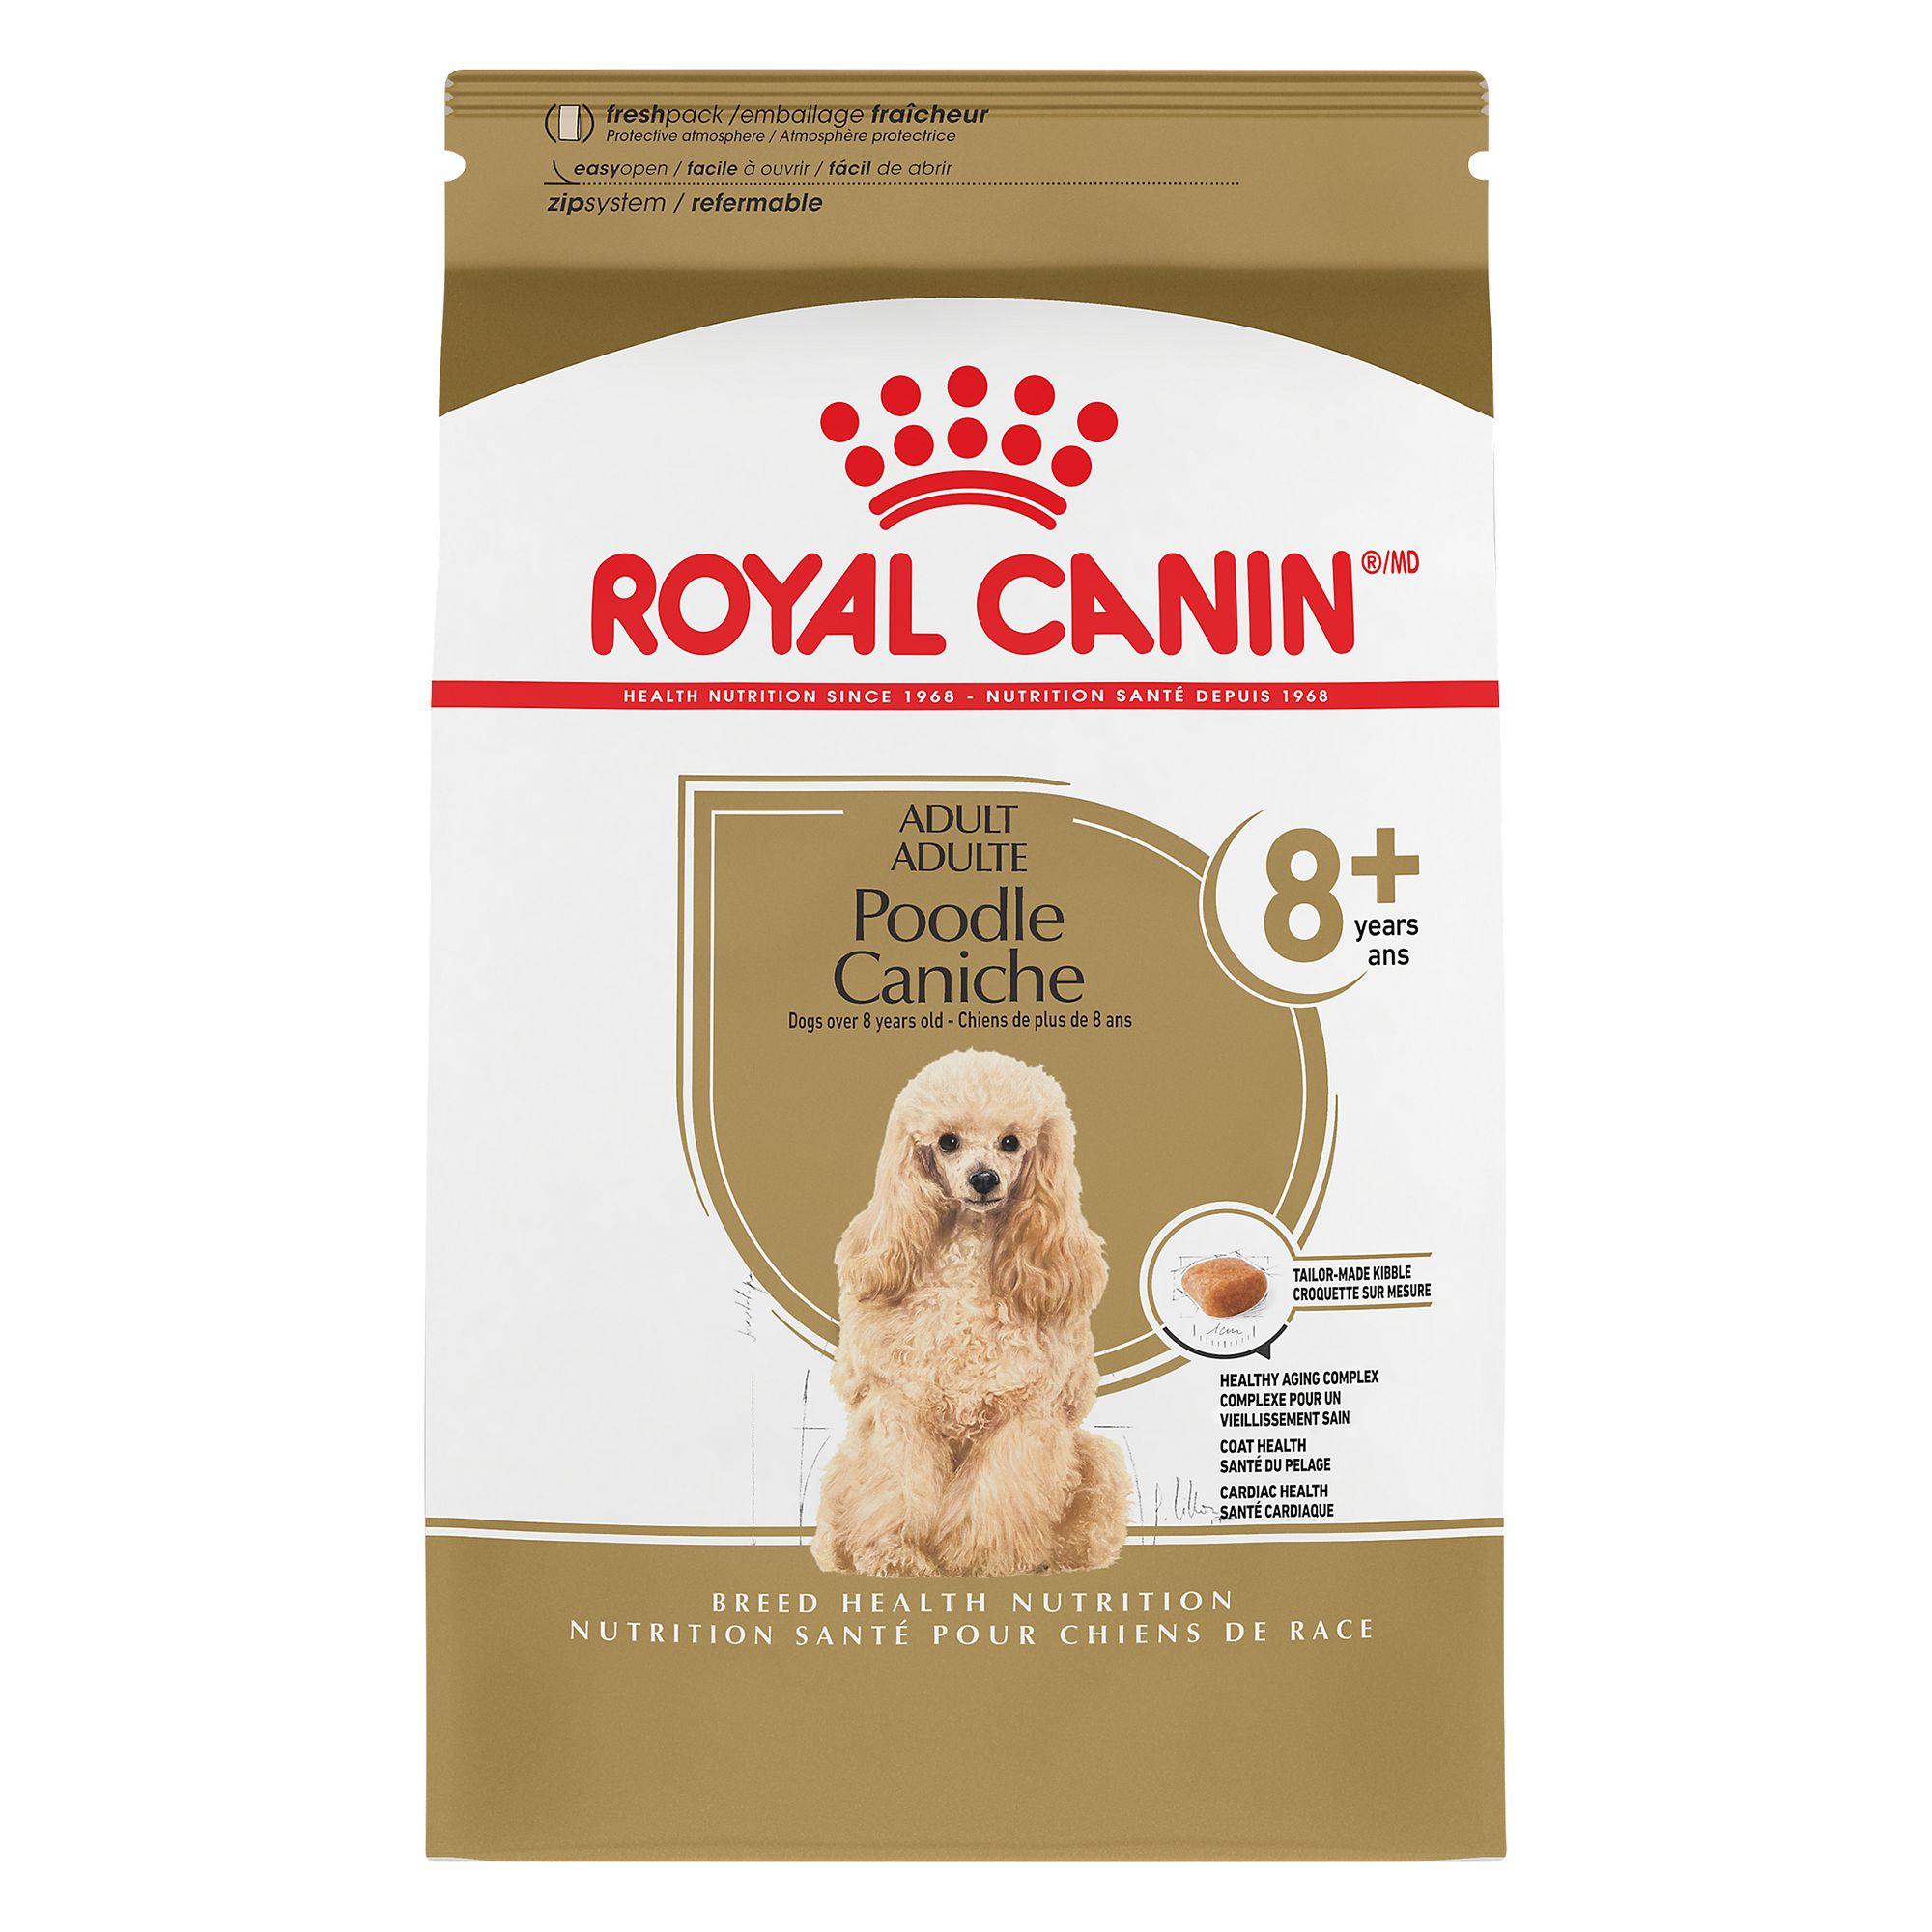 royal canin poodle dog food